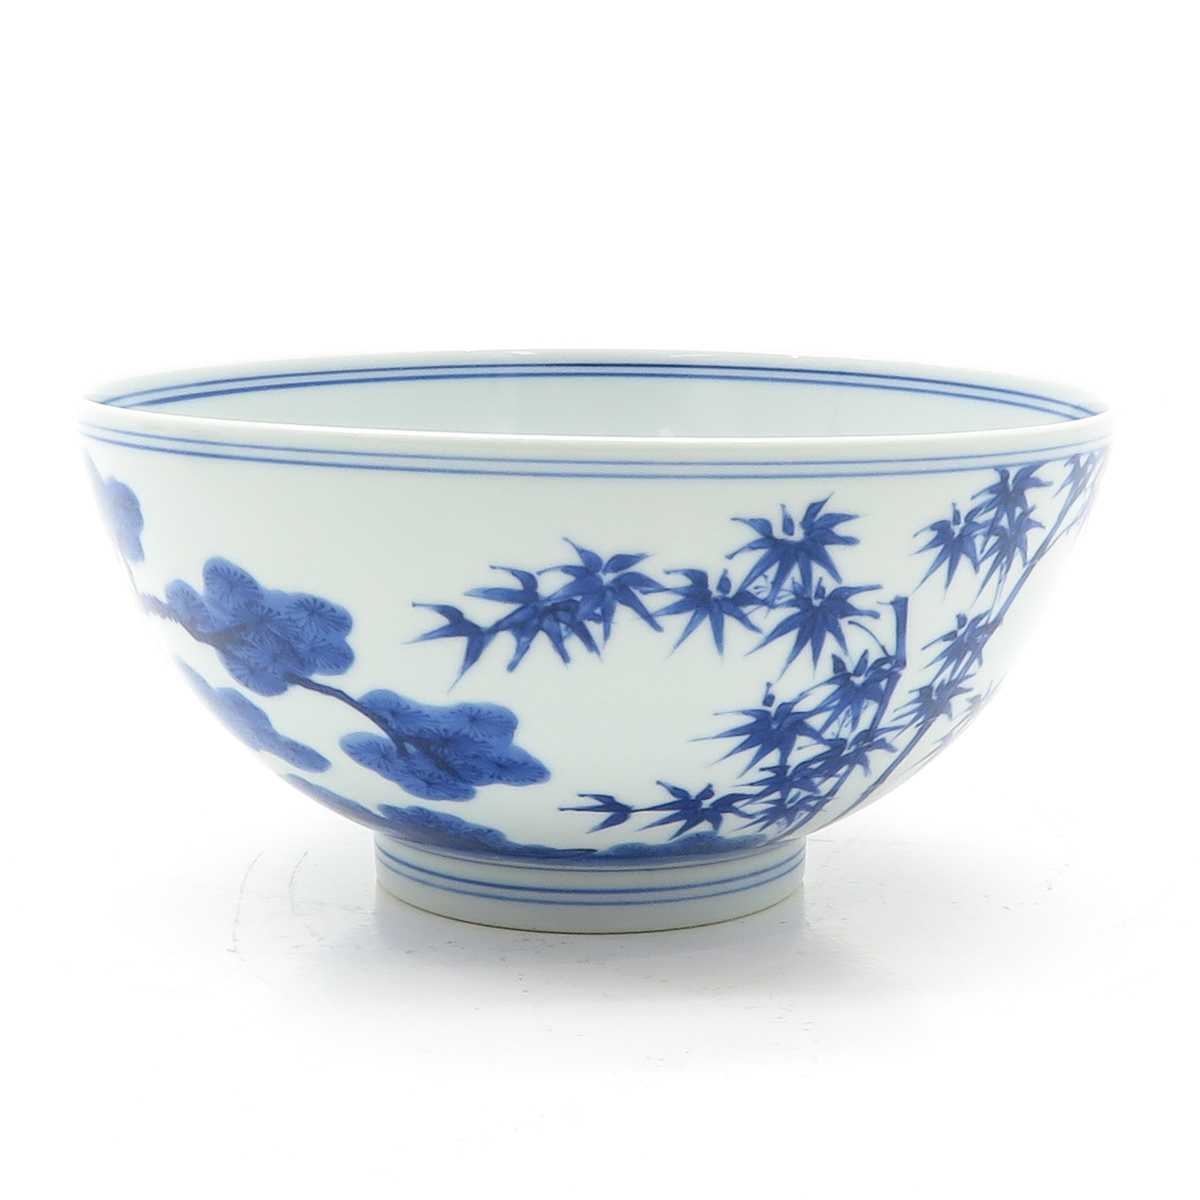 China Porcelain Bowl - Image 2 of 6